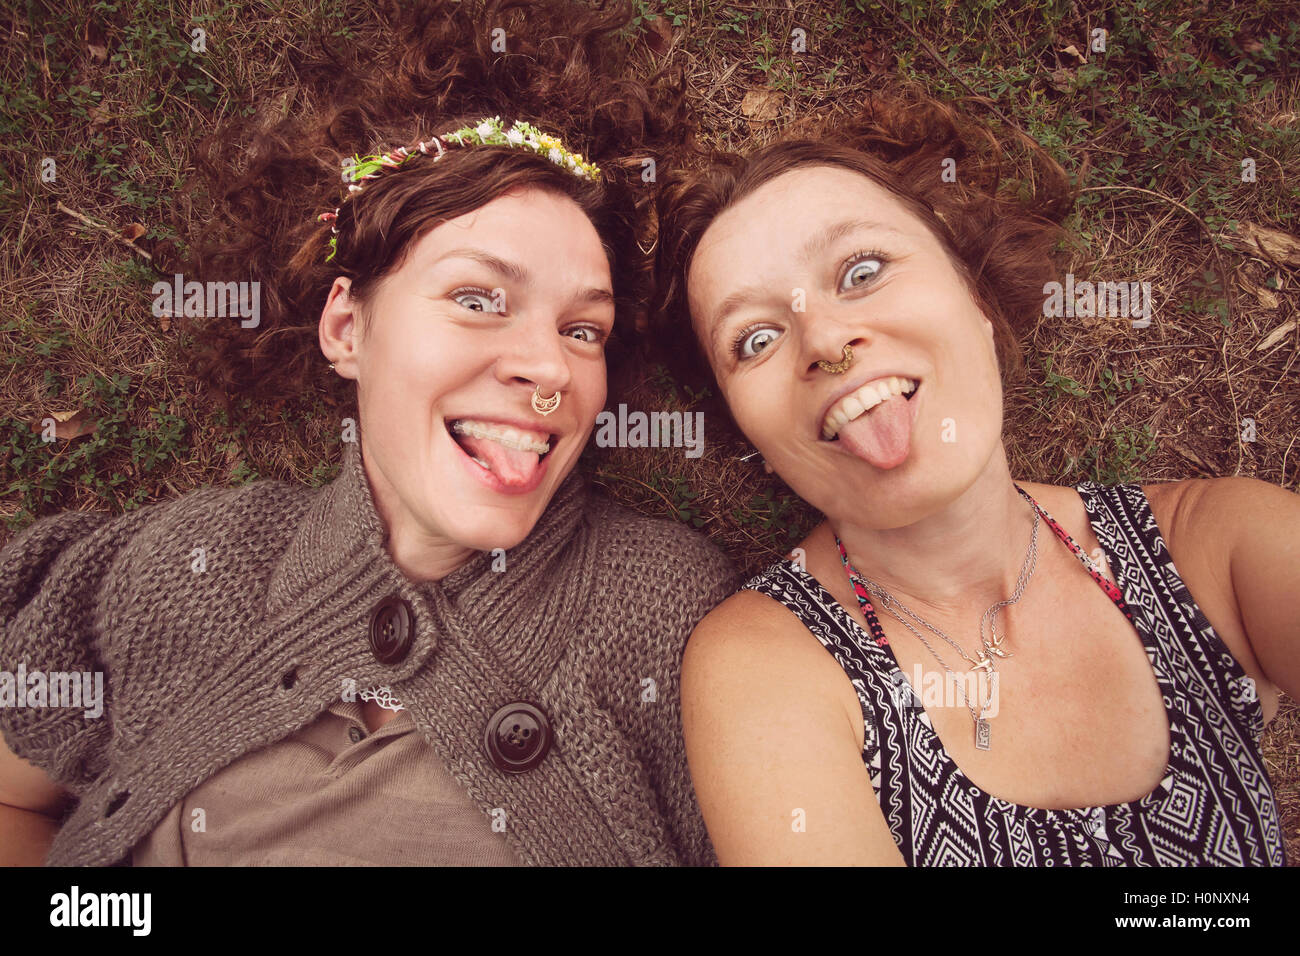 Deux funny girls montrant leurs langues dans la nature Banque D'Images